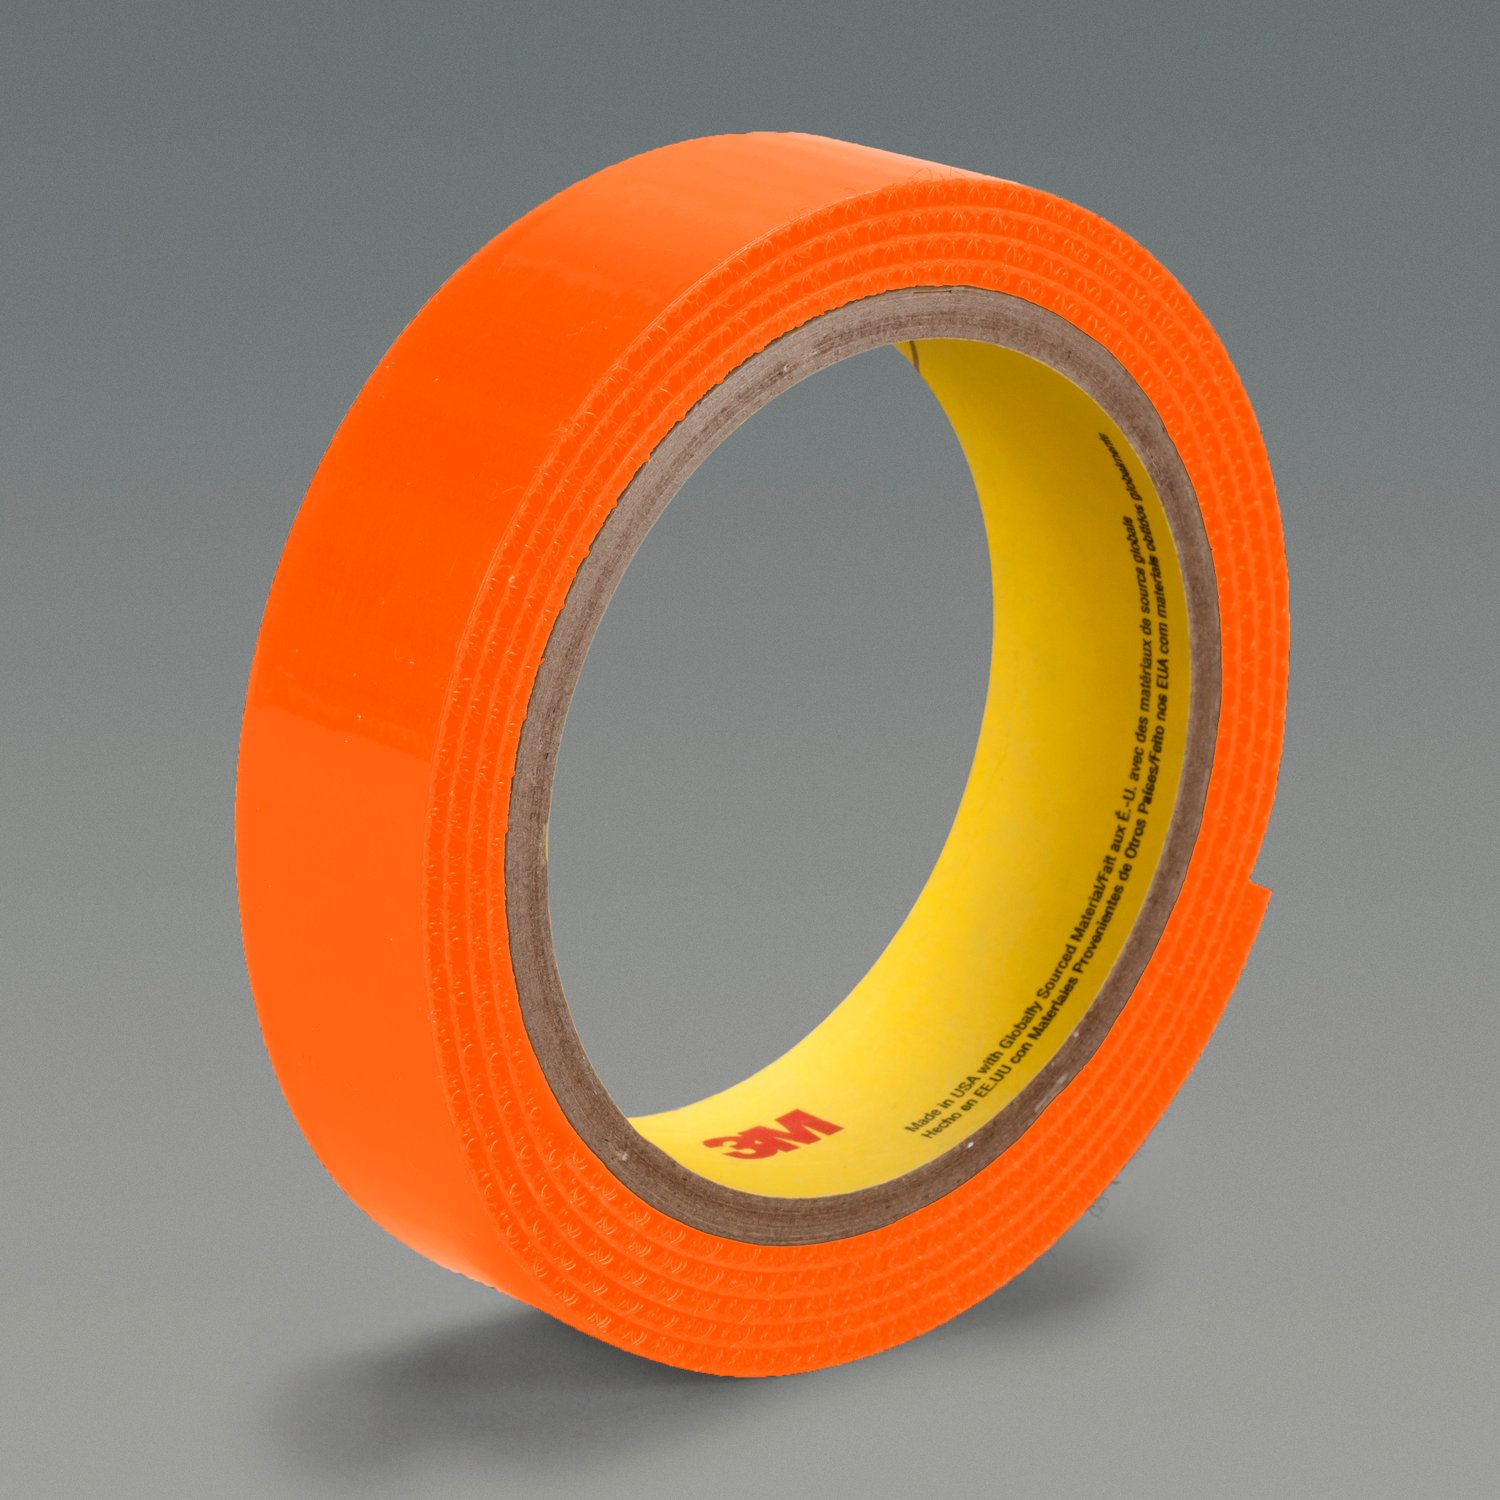 20-35mm Bronze D Ring Slide Adjustable Buckle Loop,metal D Rings